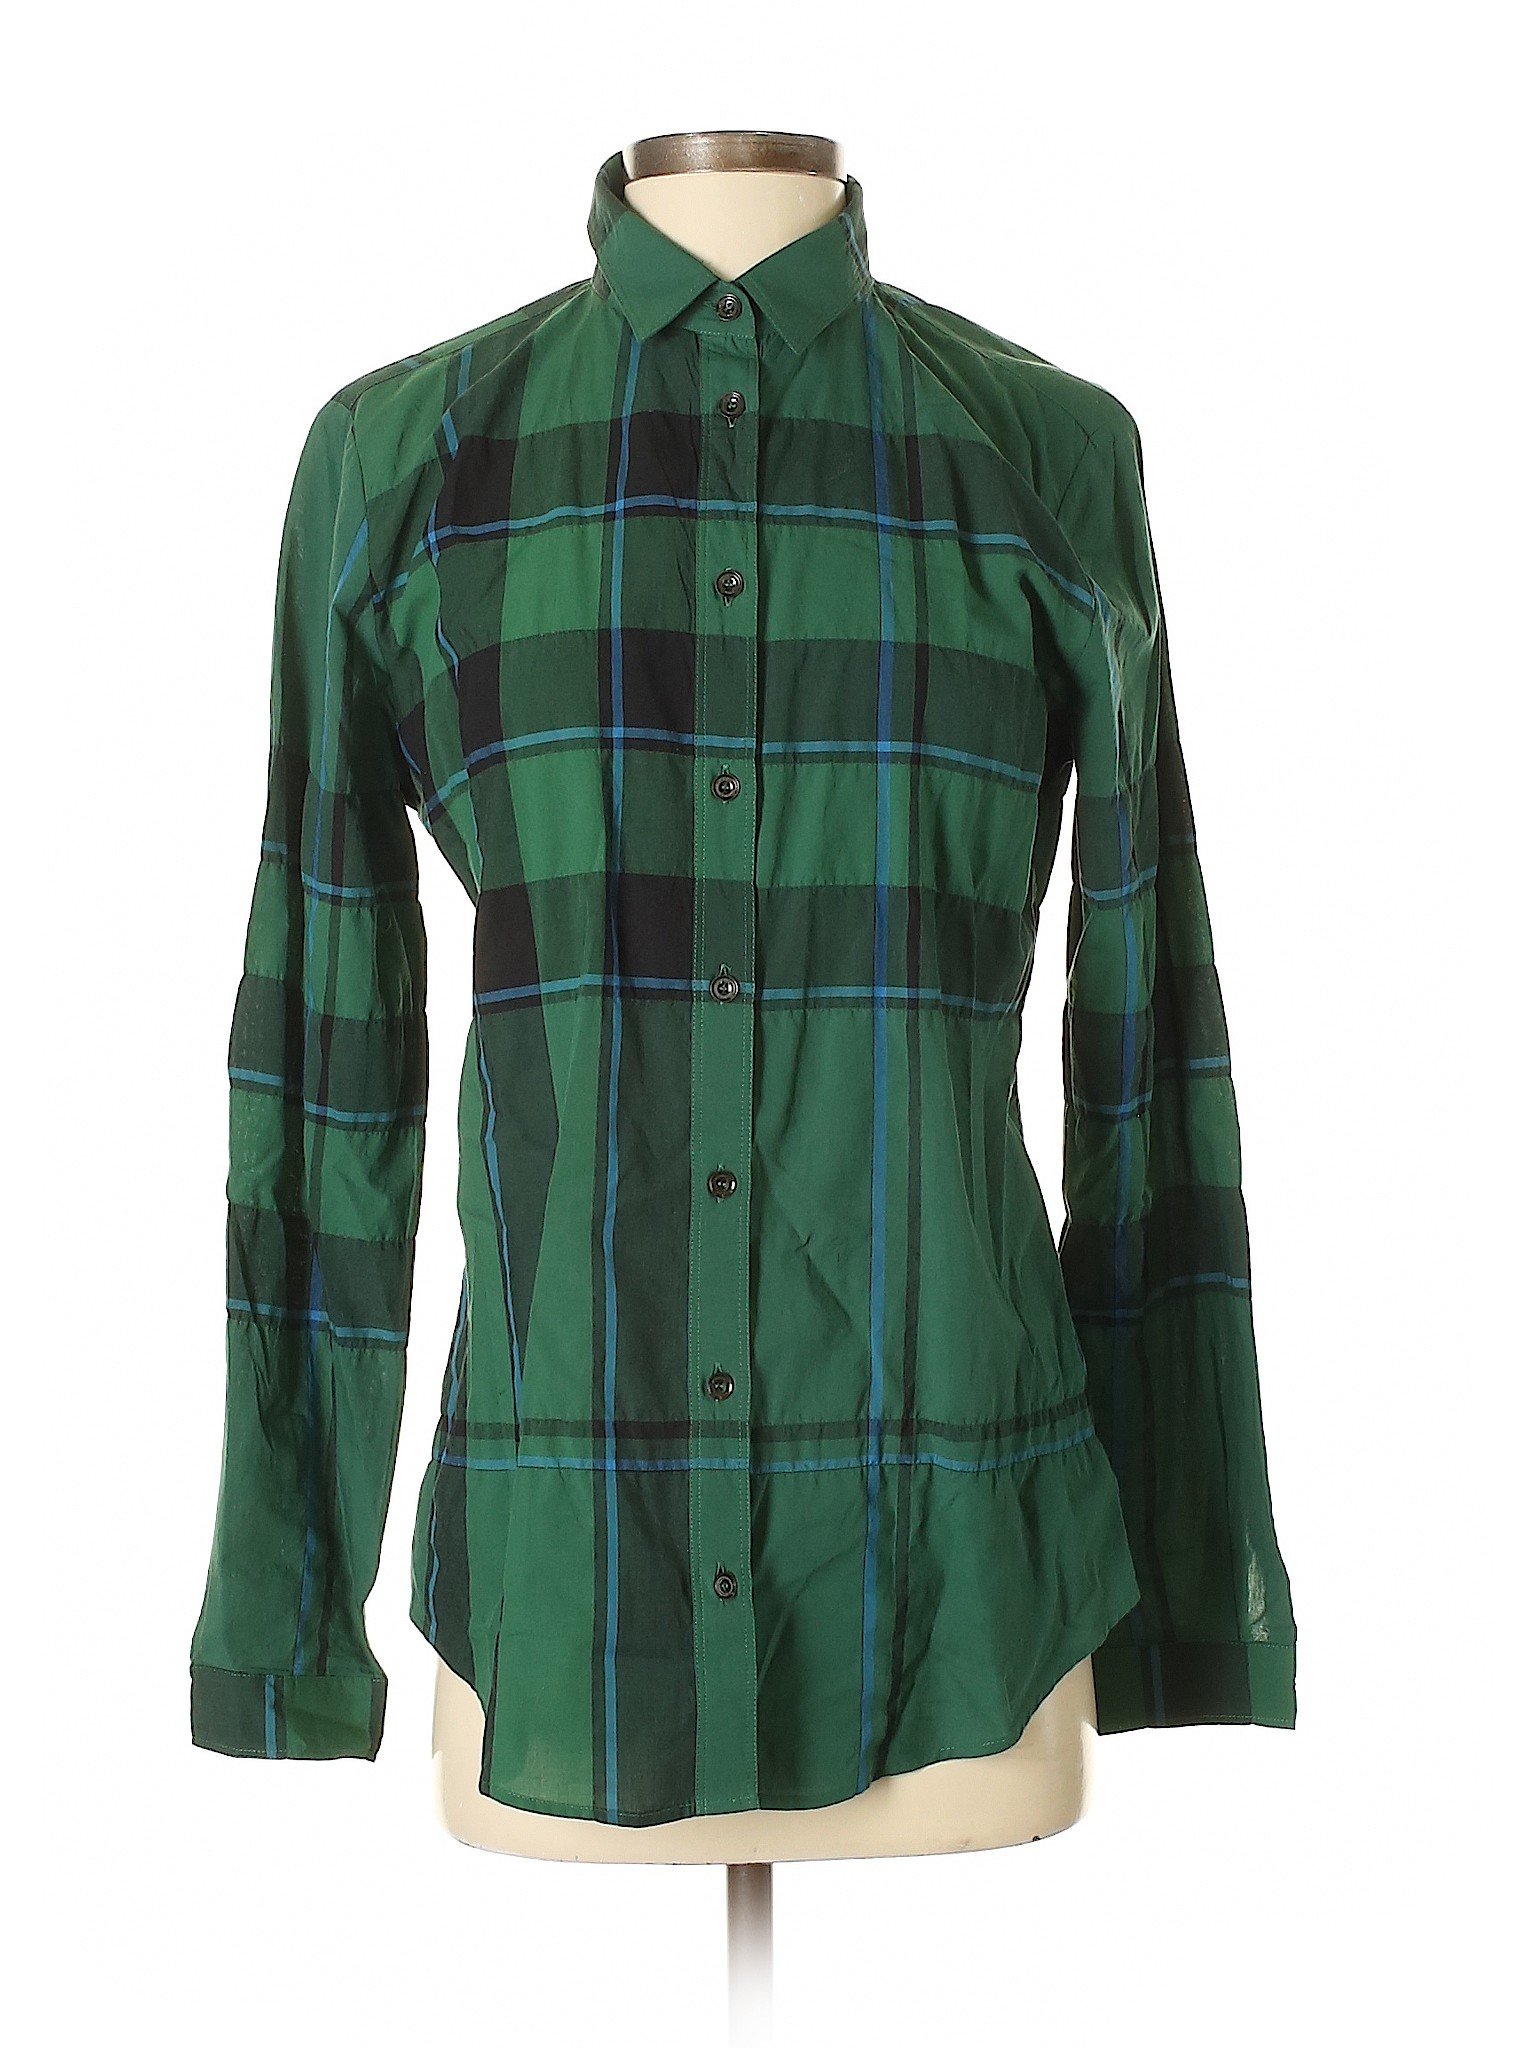 burberry shirt womens green